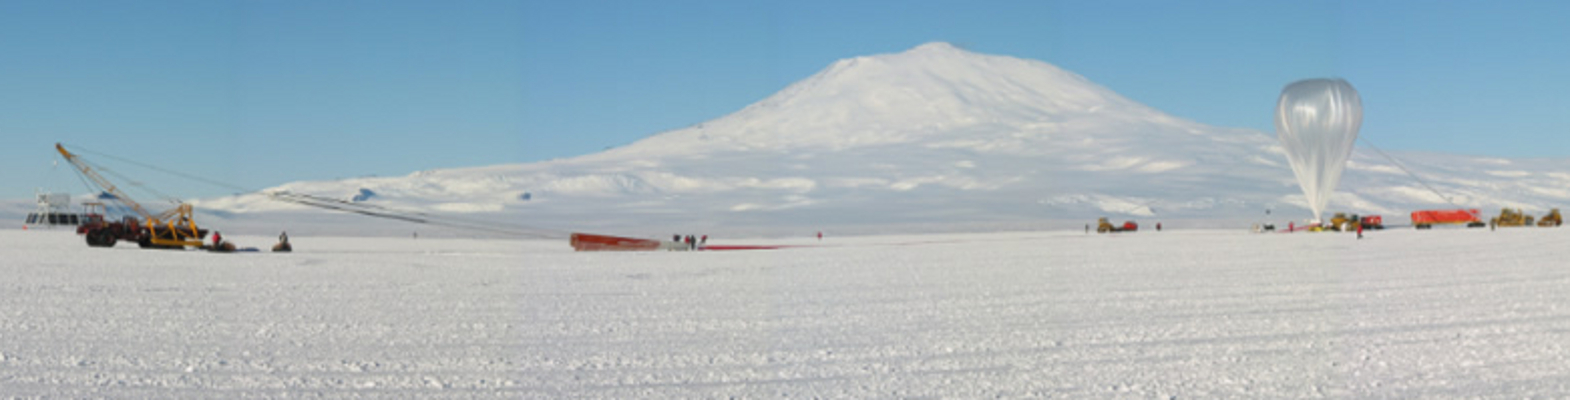 Super-TIGER launch, Antarctica, Dec 9, 2012